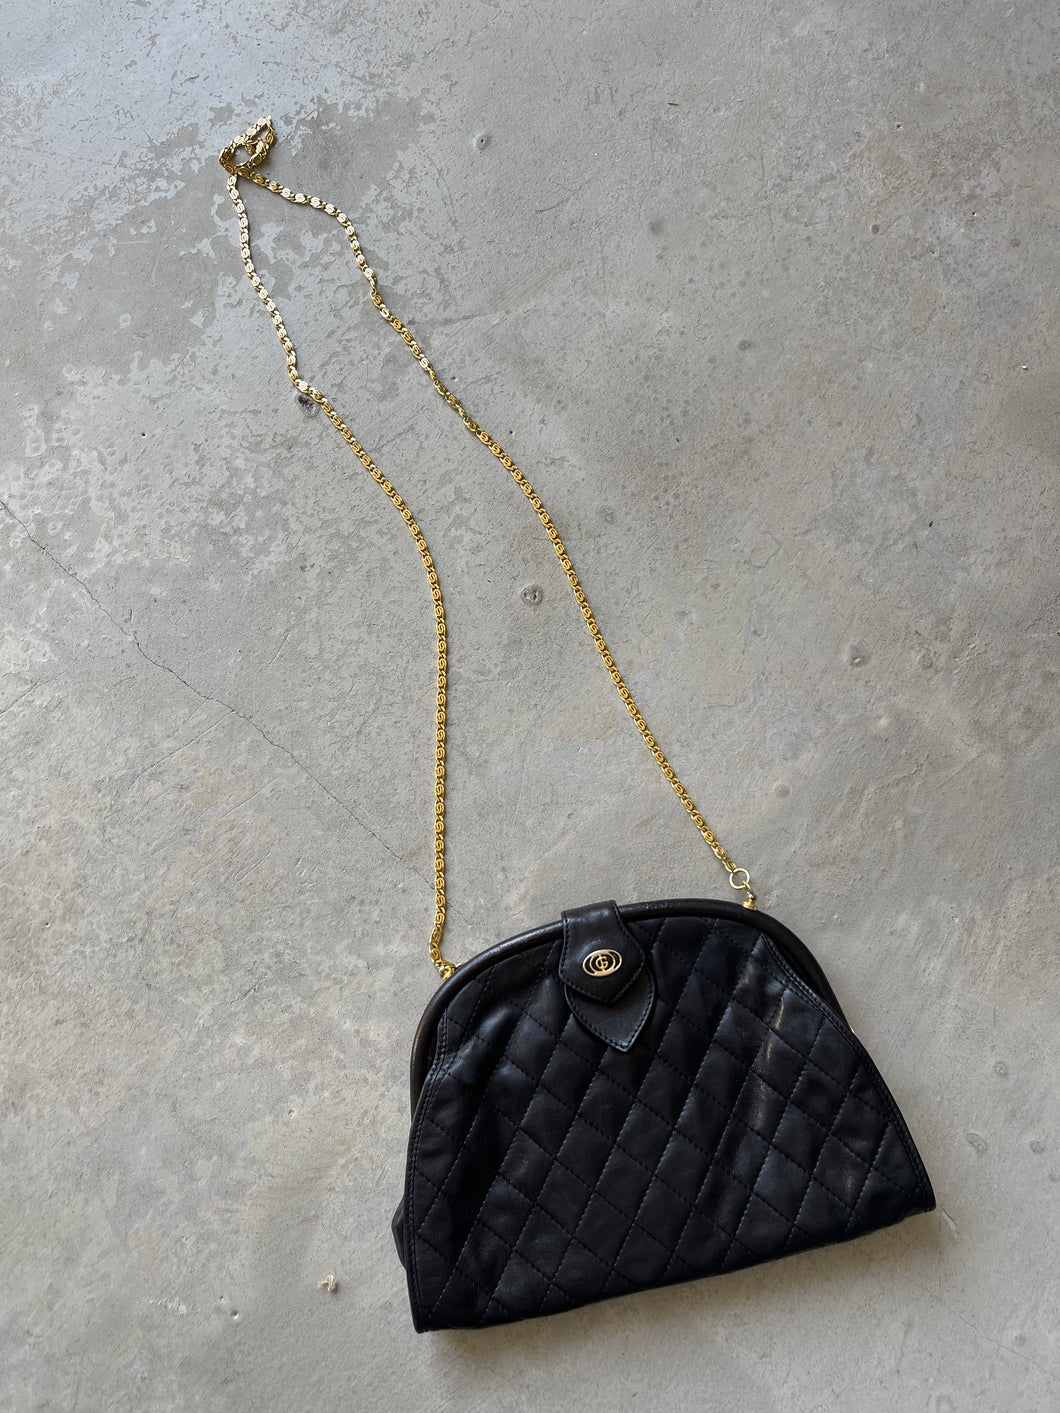 Gino Ferruzzi Real Leather Bag